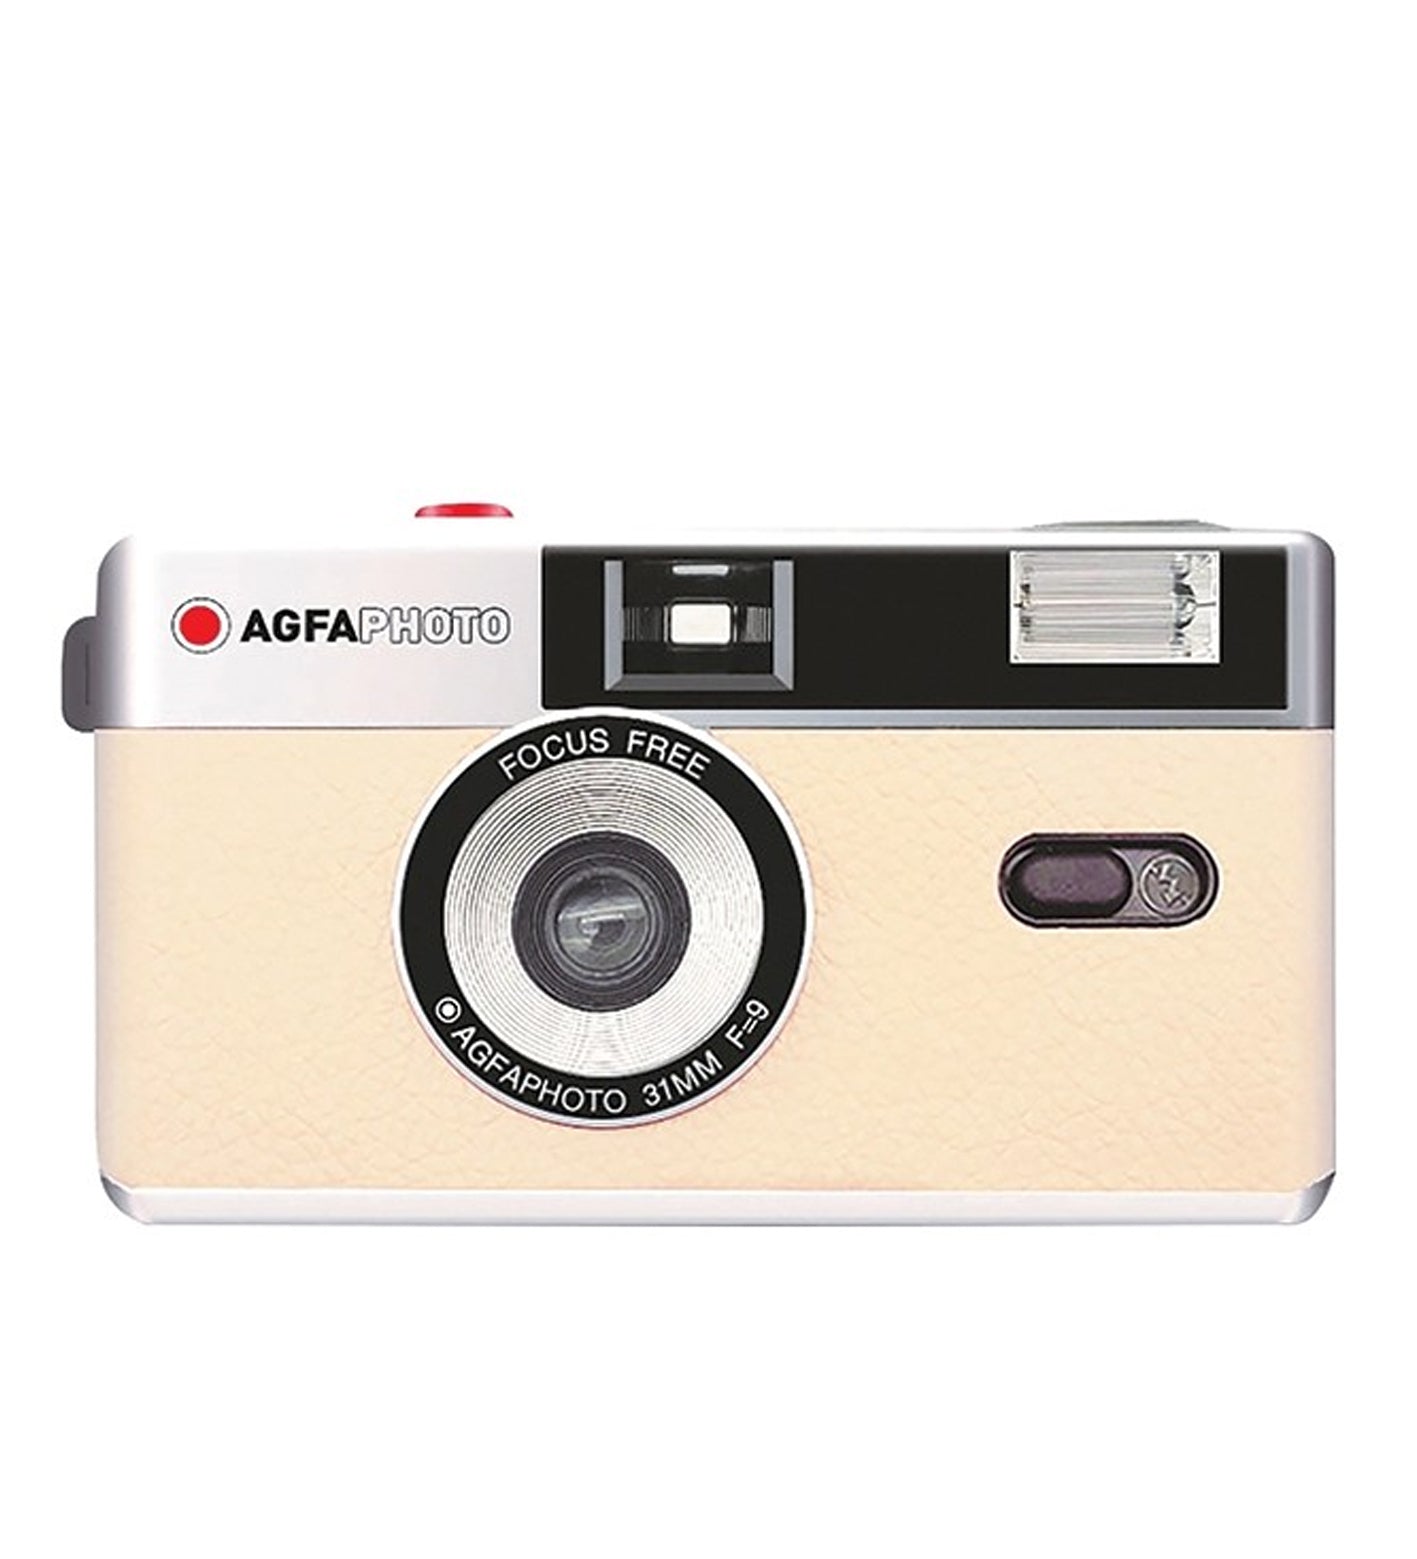 Agfa Reusable Camera (£32.99 incl VAT)